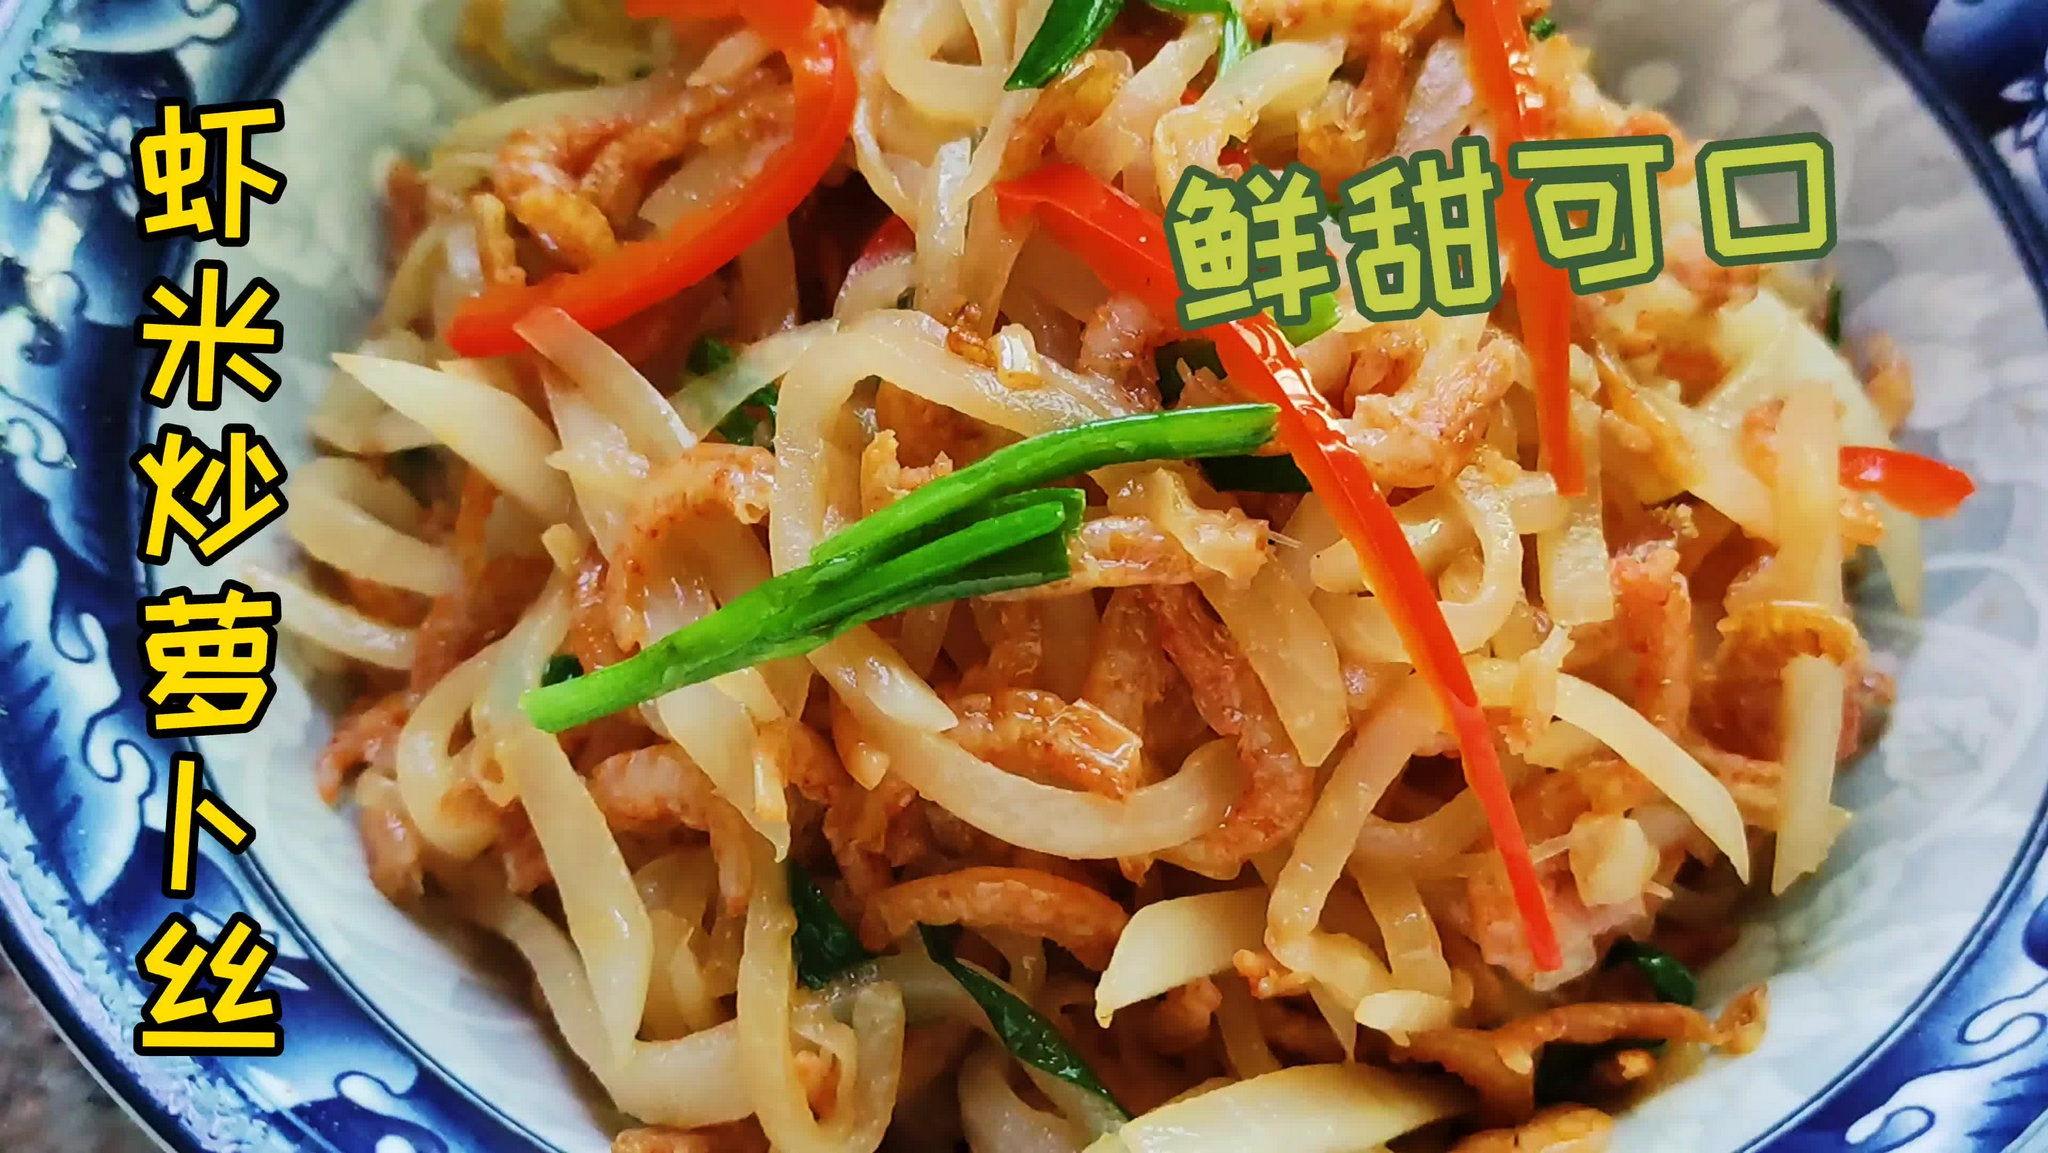 虾米炝炒萝卜丝,鲜甜可口,营养丰富,冬吃萝卜益处多哦